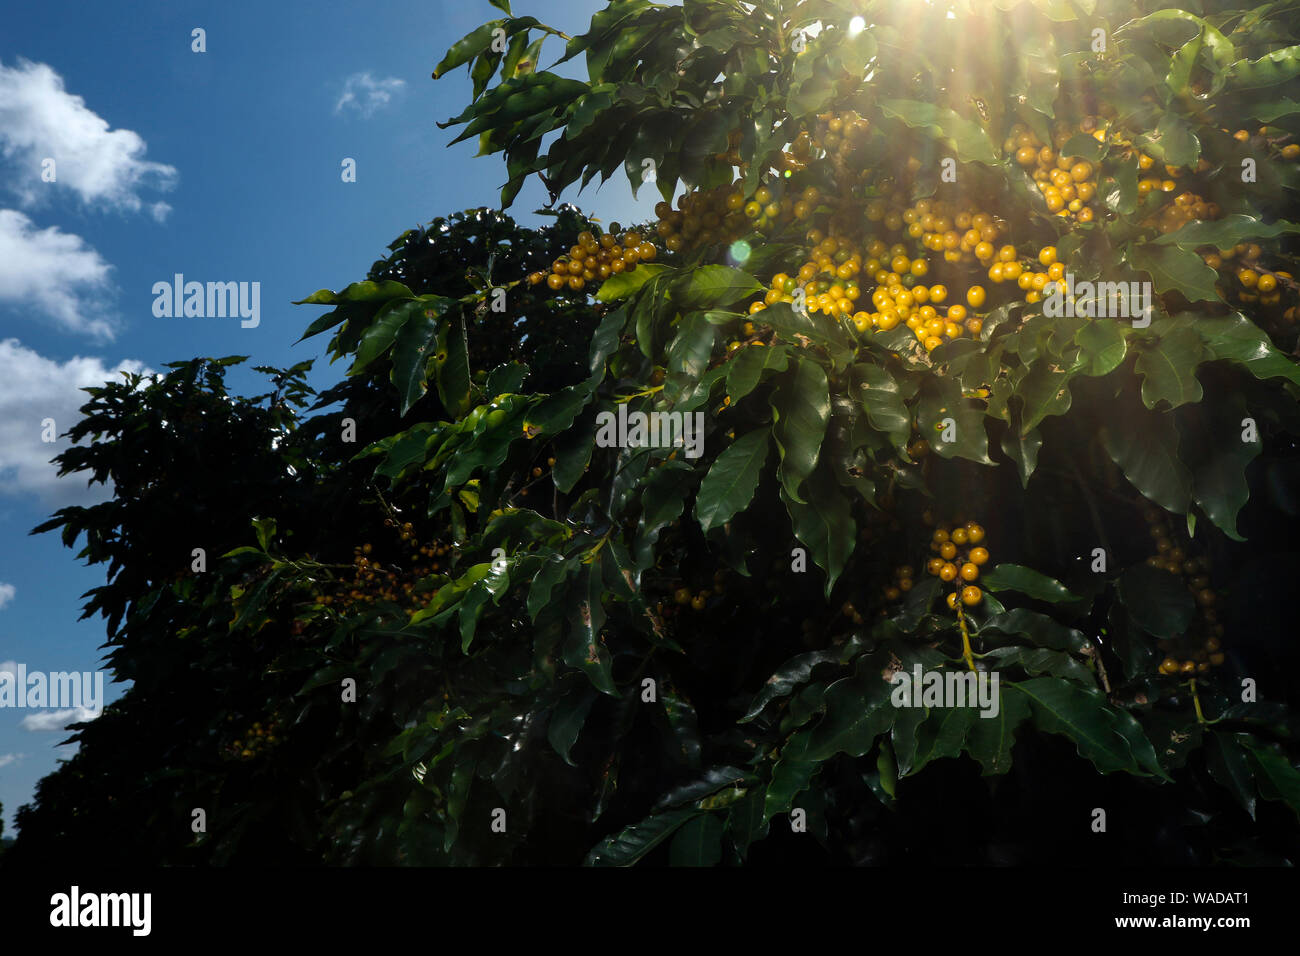 Ver granja con plantación de café. Los agronegocios. Cosecha de café con granos de color amarillo, verde follaje y cielo azul. Foto de stock